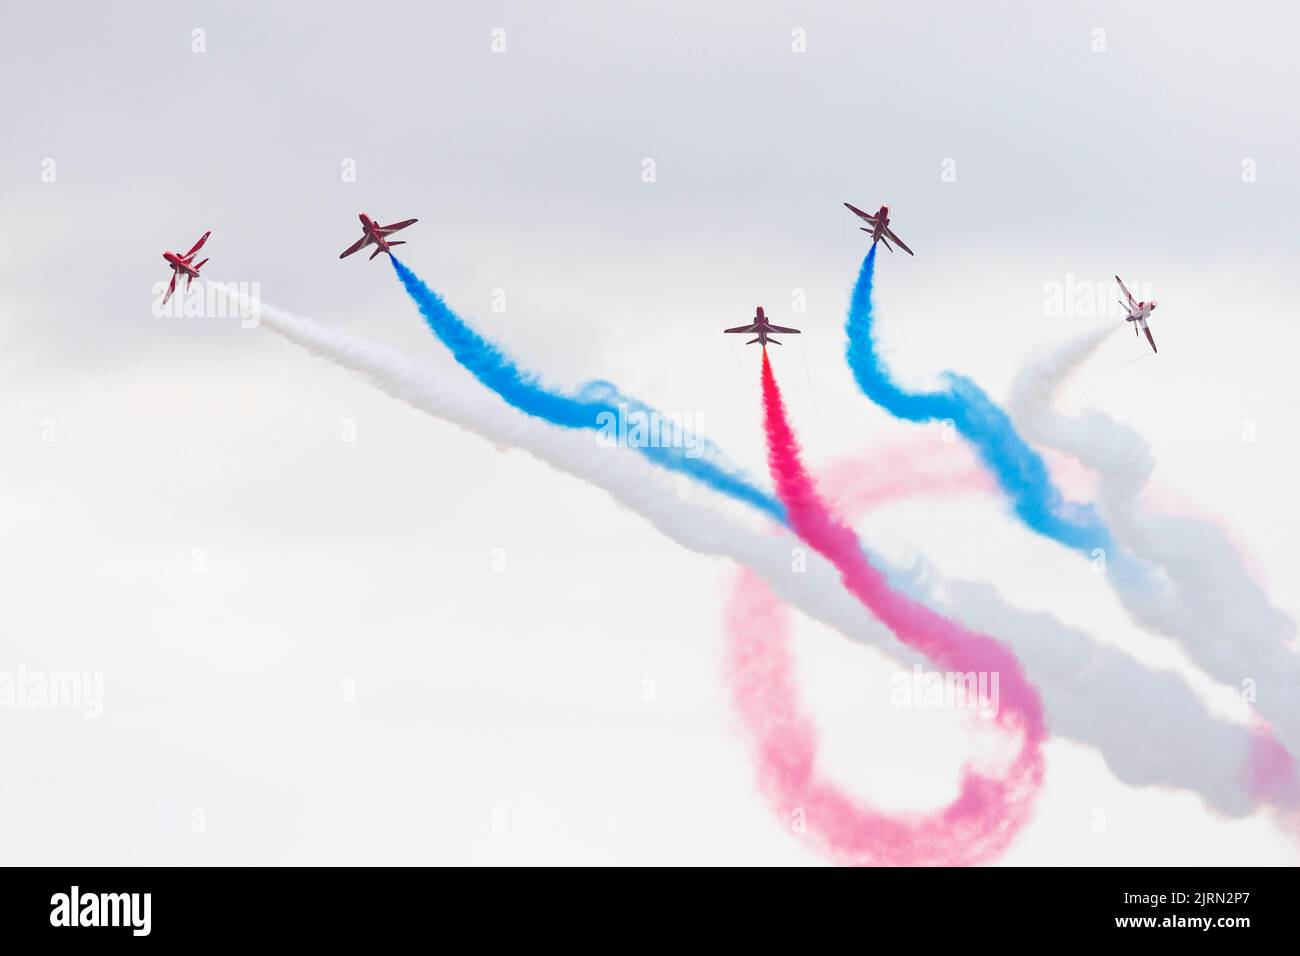 L'équipe de acrobates de RAF, les flèches rouges, se comportent avec seulement 6 avions, faisant un affichage à base de nuages bas à la journée des familles de RAF Syerston. Banque D'Images